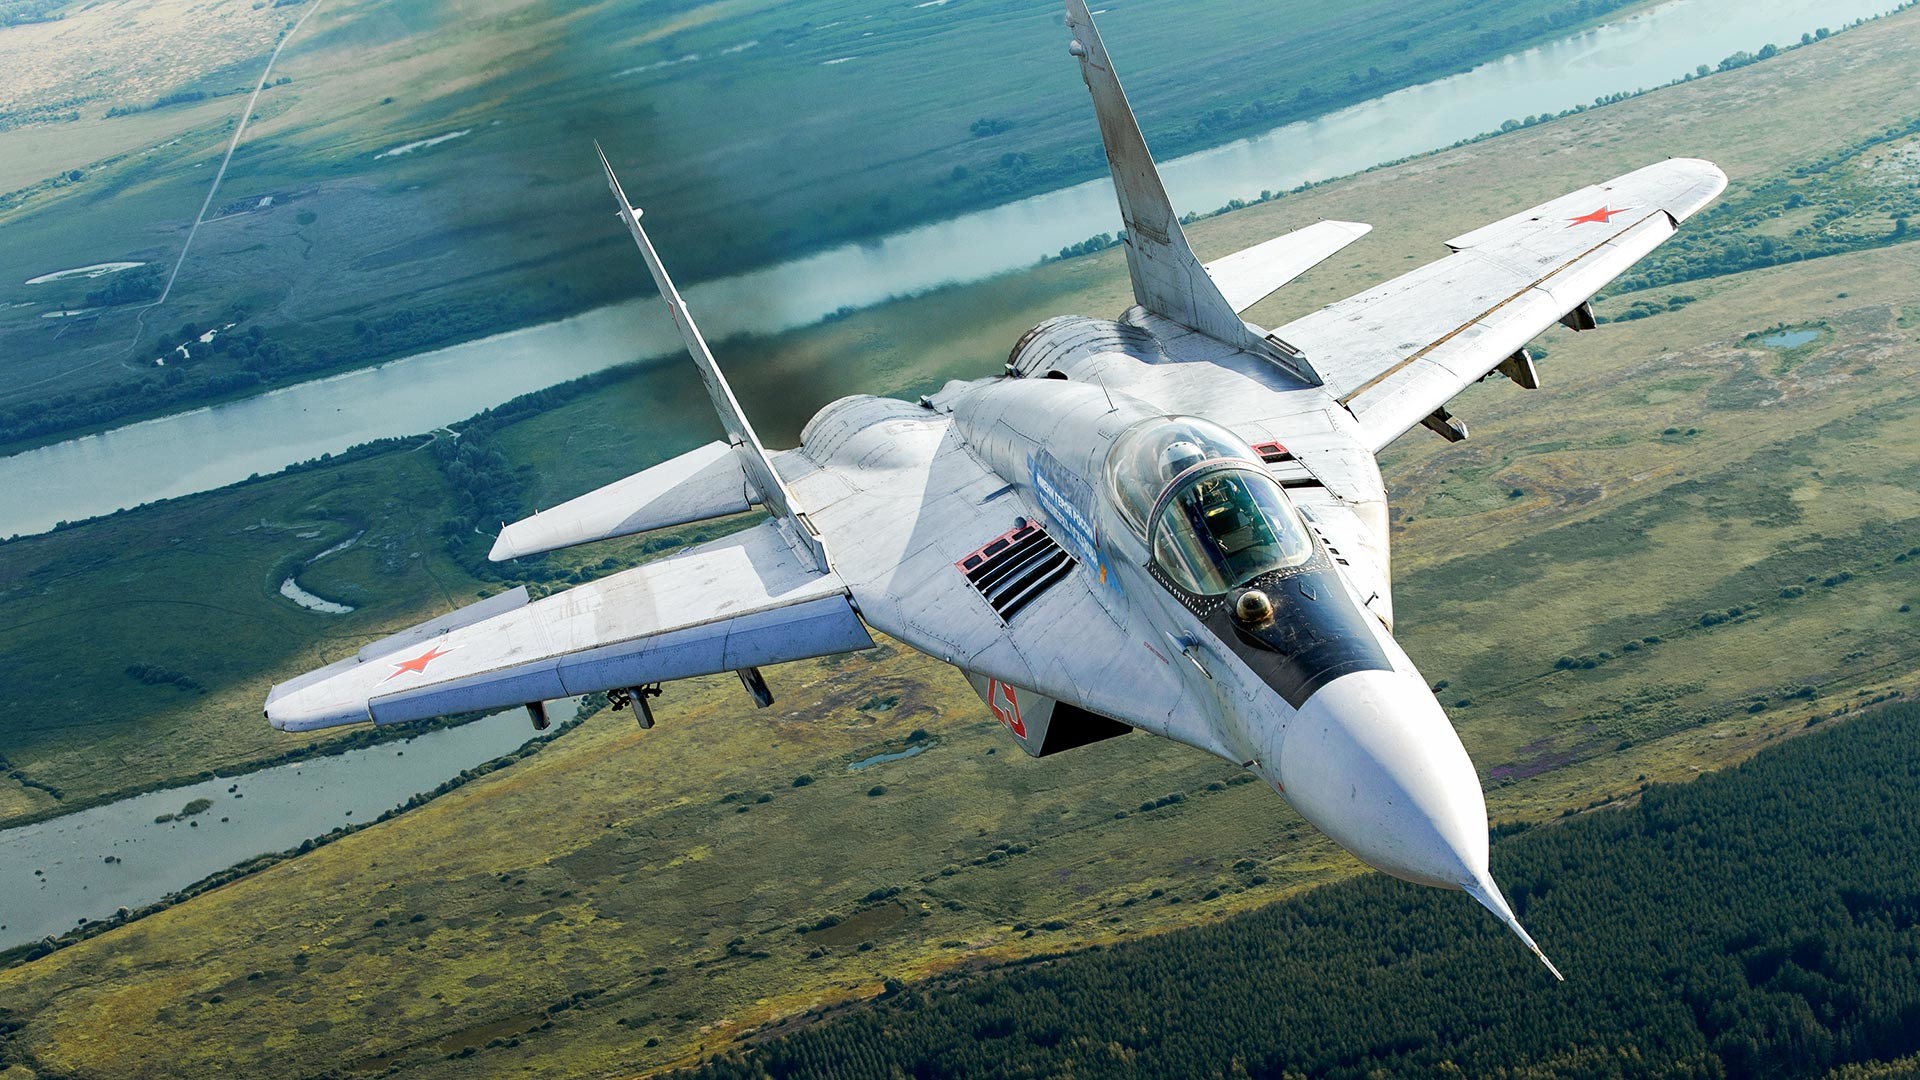 MiG-29S (9.13S) 
